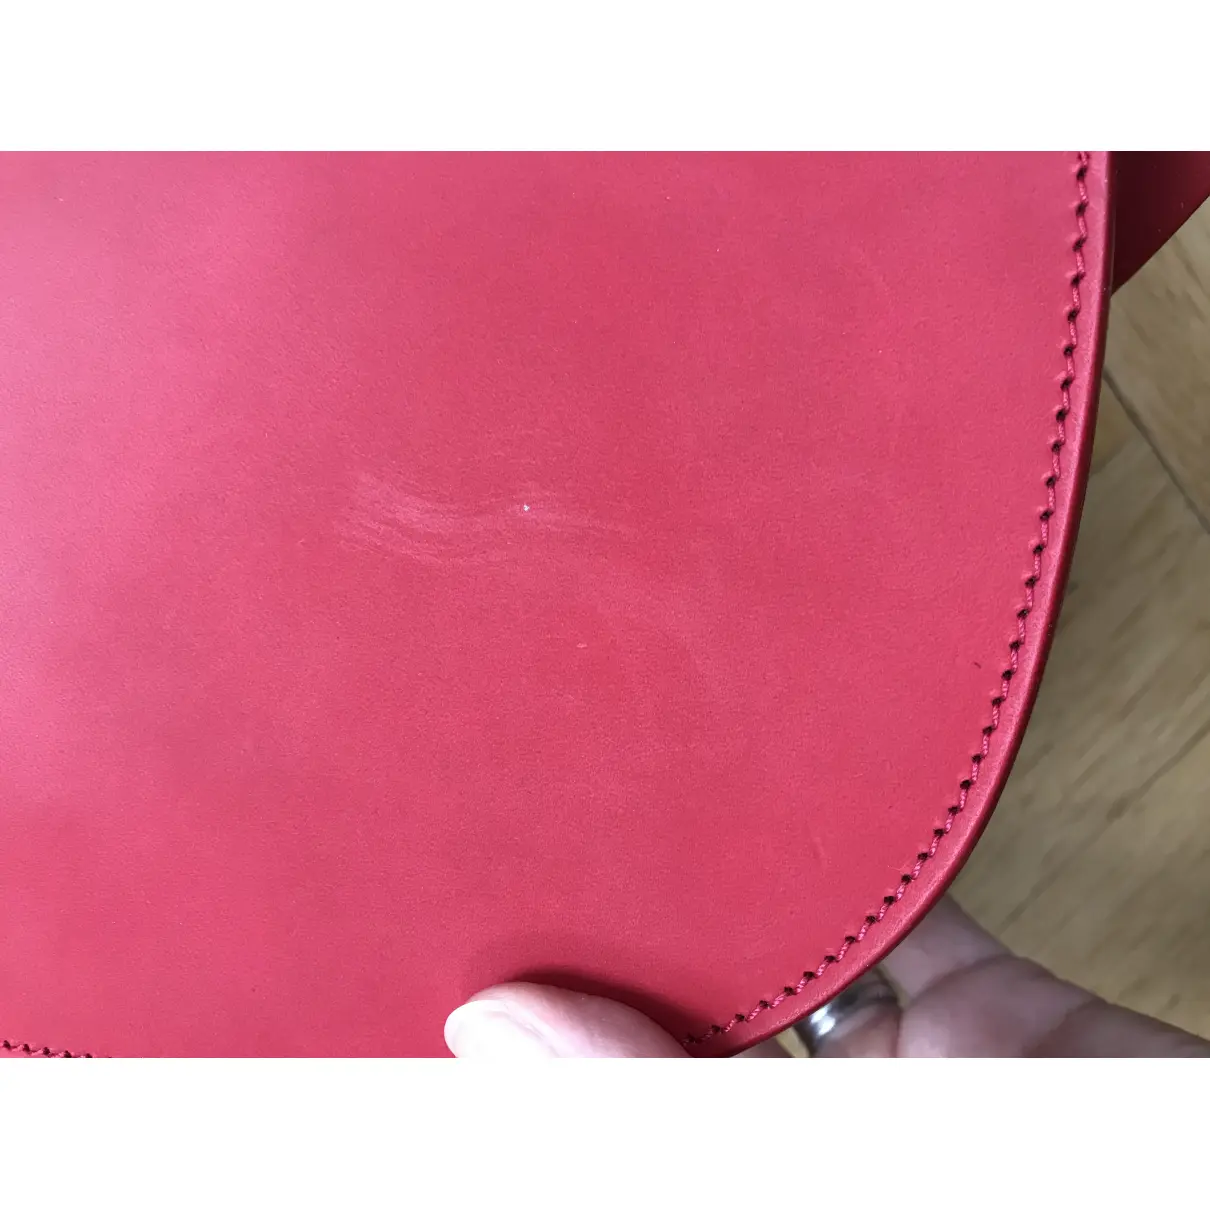 Buy Sophie Hulme Leather crossbody bag online